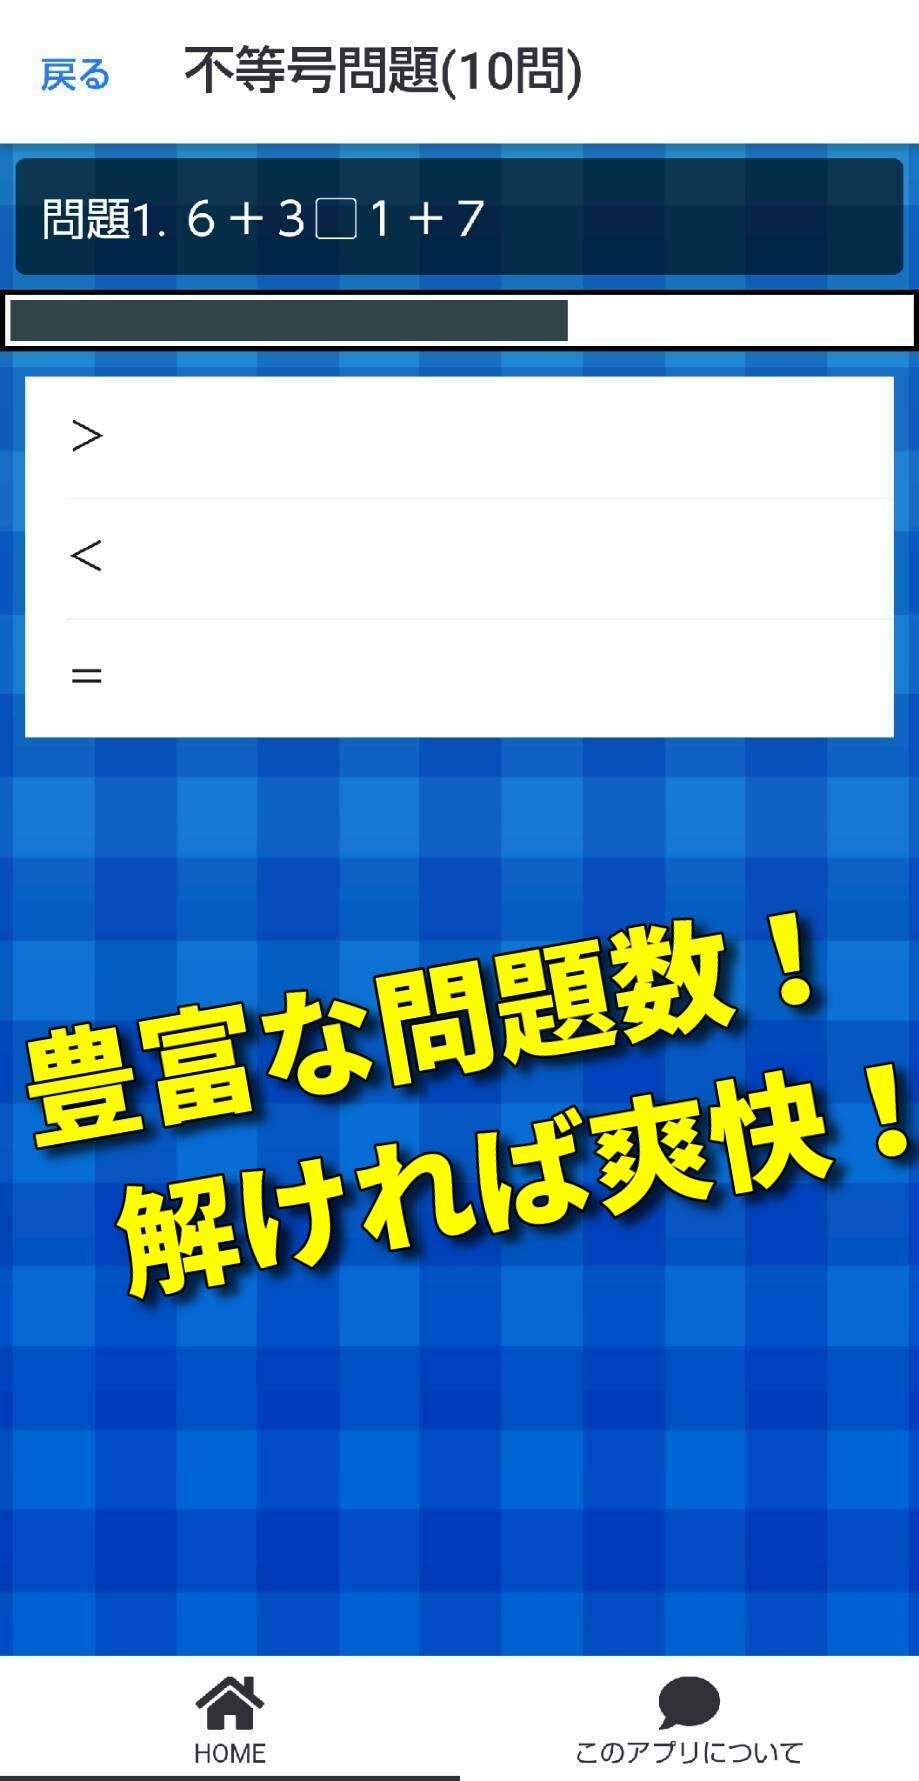 頭の体操 クイズアプリゲームで脳トレ 計算 漢字で鍛えろ For Android Apk Download